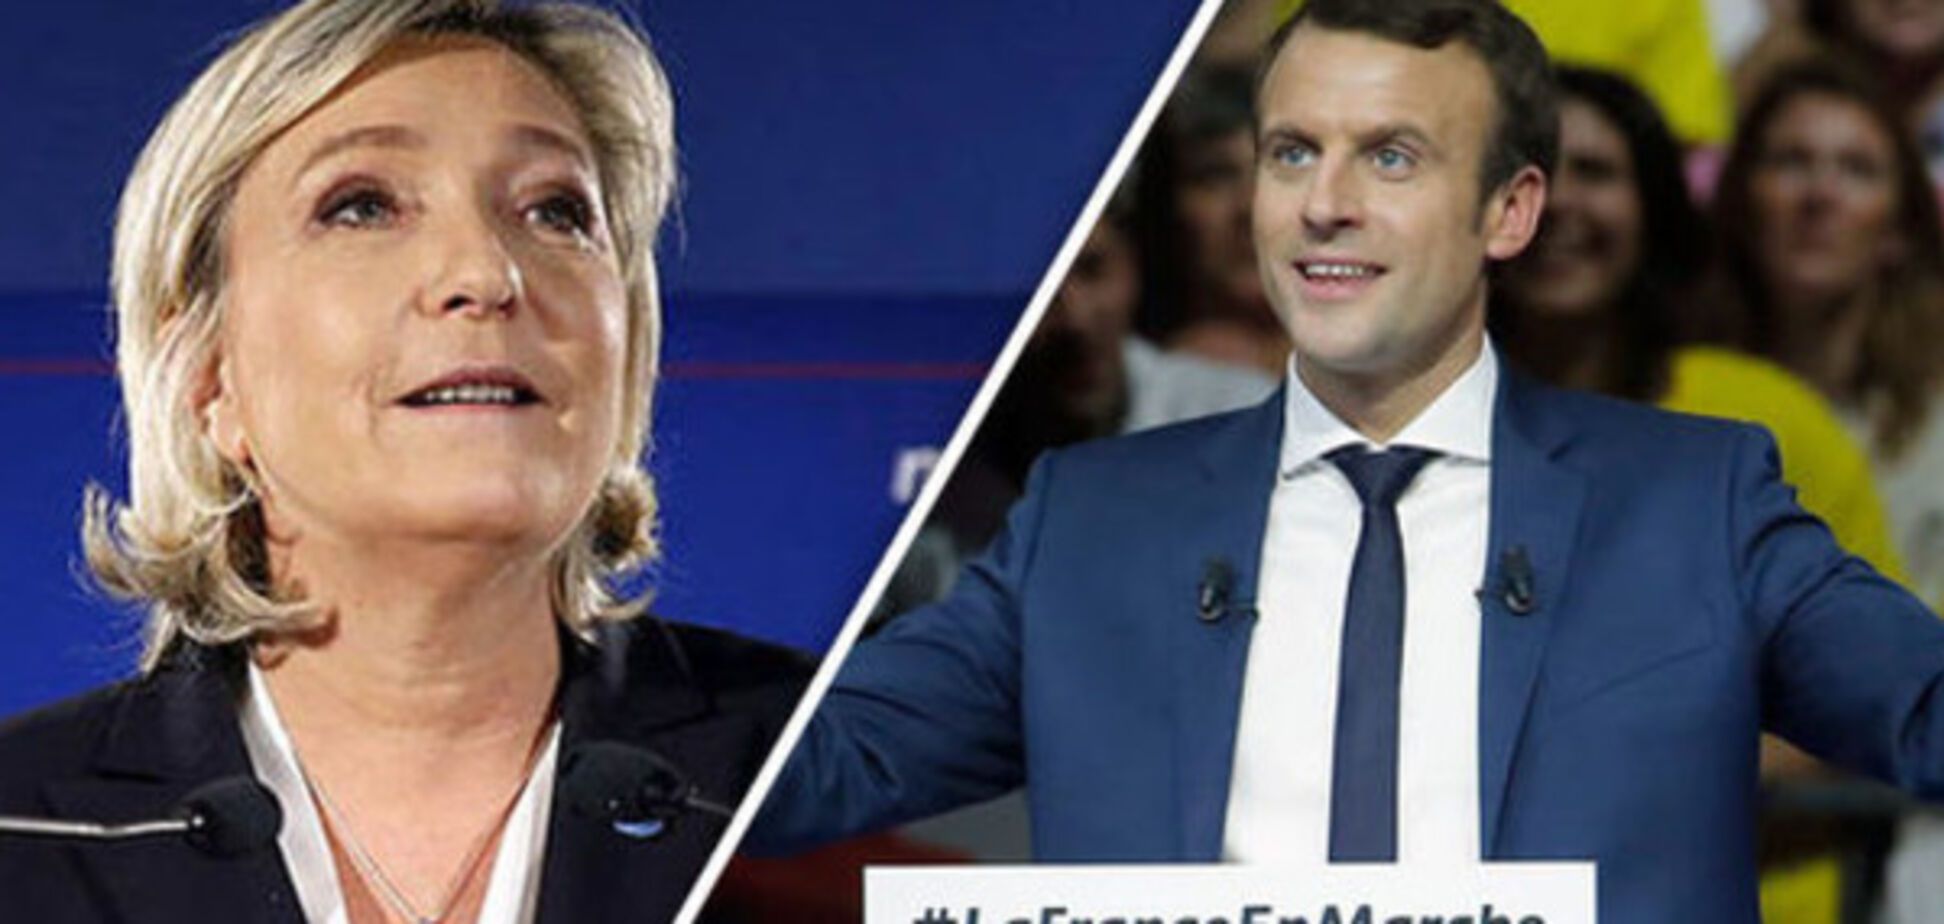 Макрон или Ле Пен: опрос по симпатиям к кандидату в президенты Франции